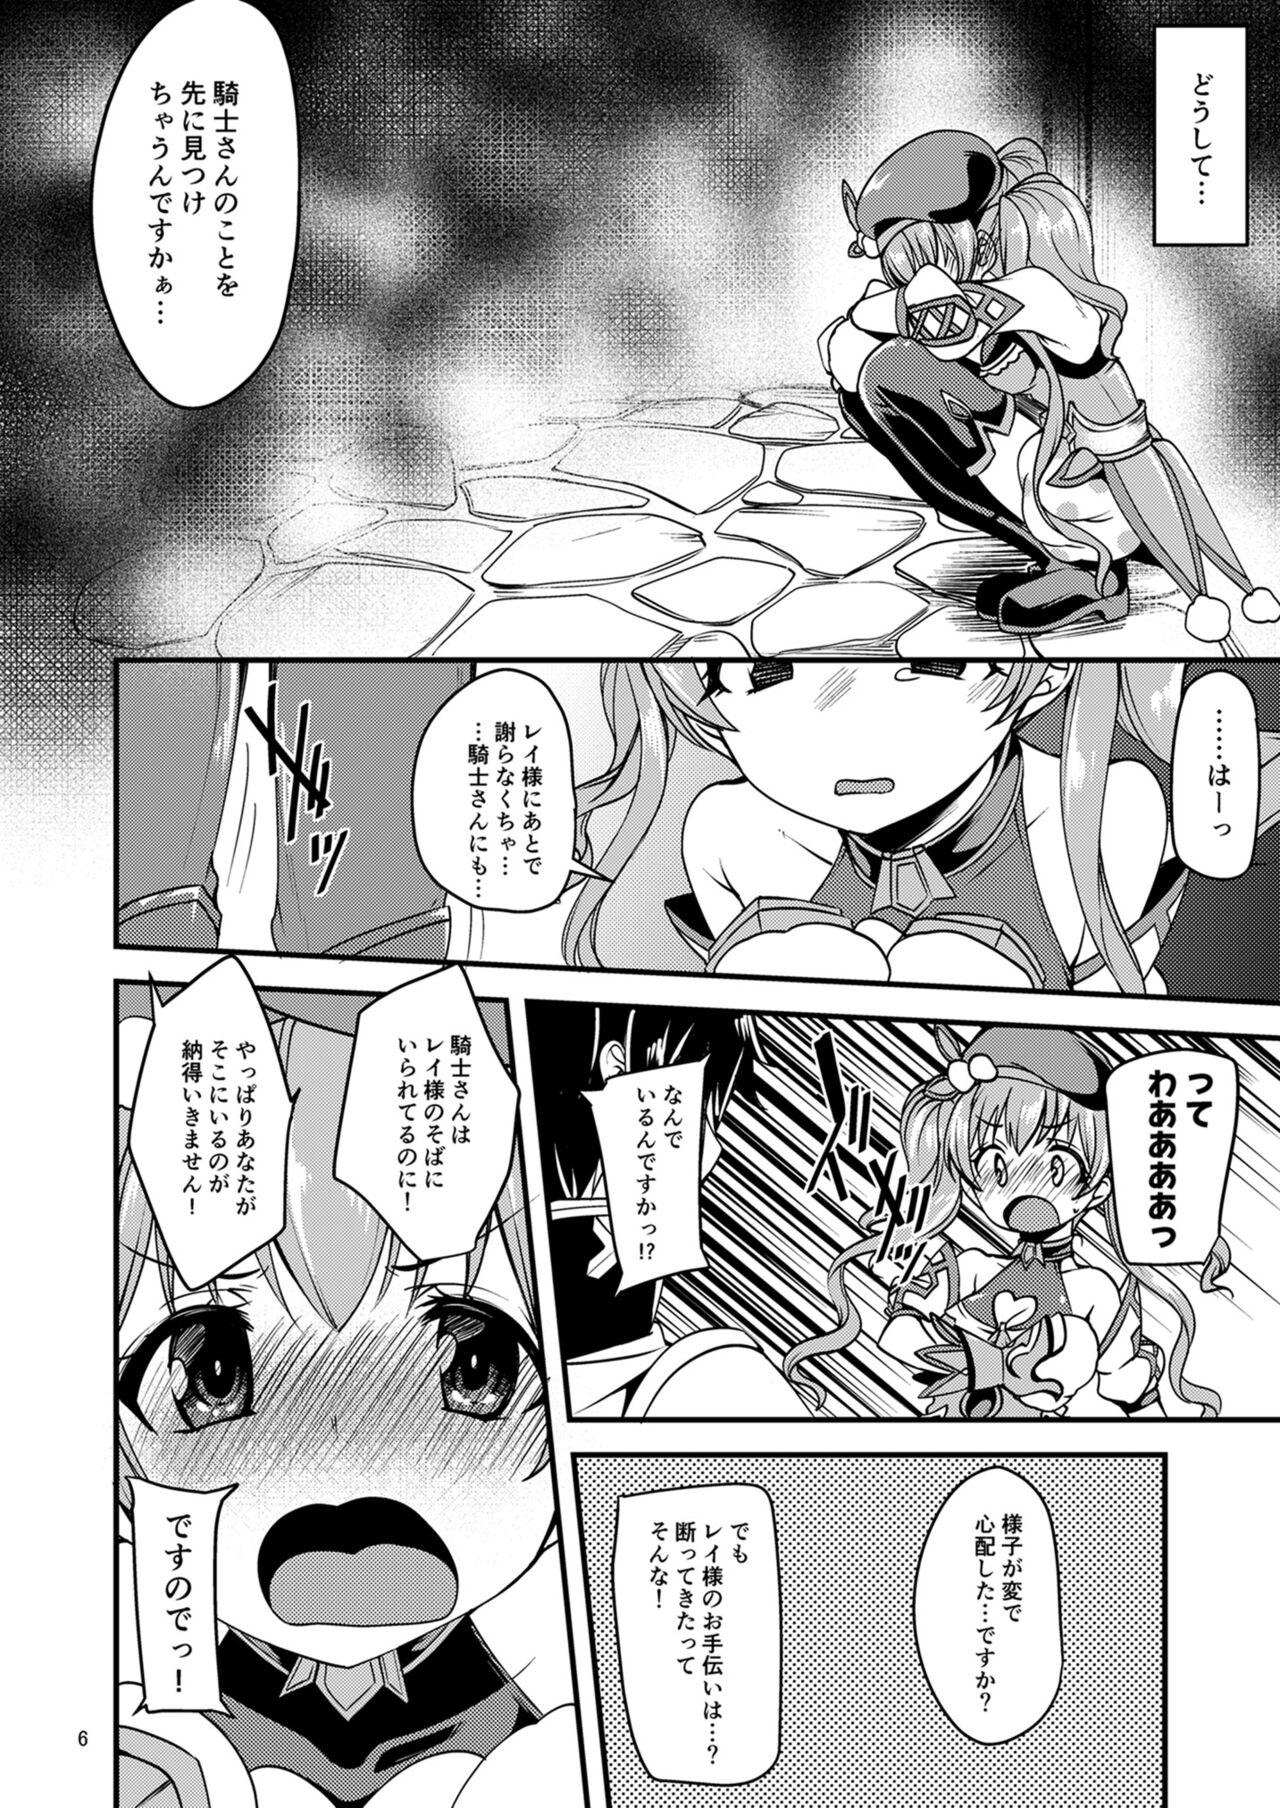 Ass Licking Tsumugi Make Heroine Move!! - Princess connect Pov Blow Job - Page 5